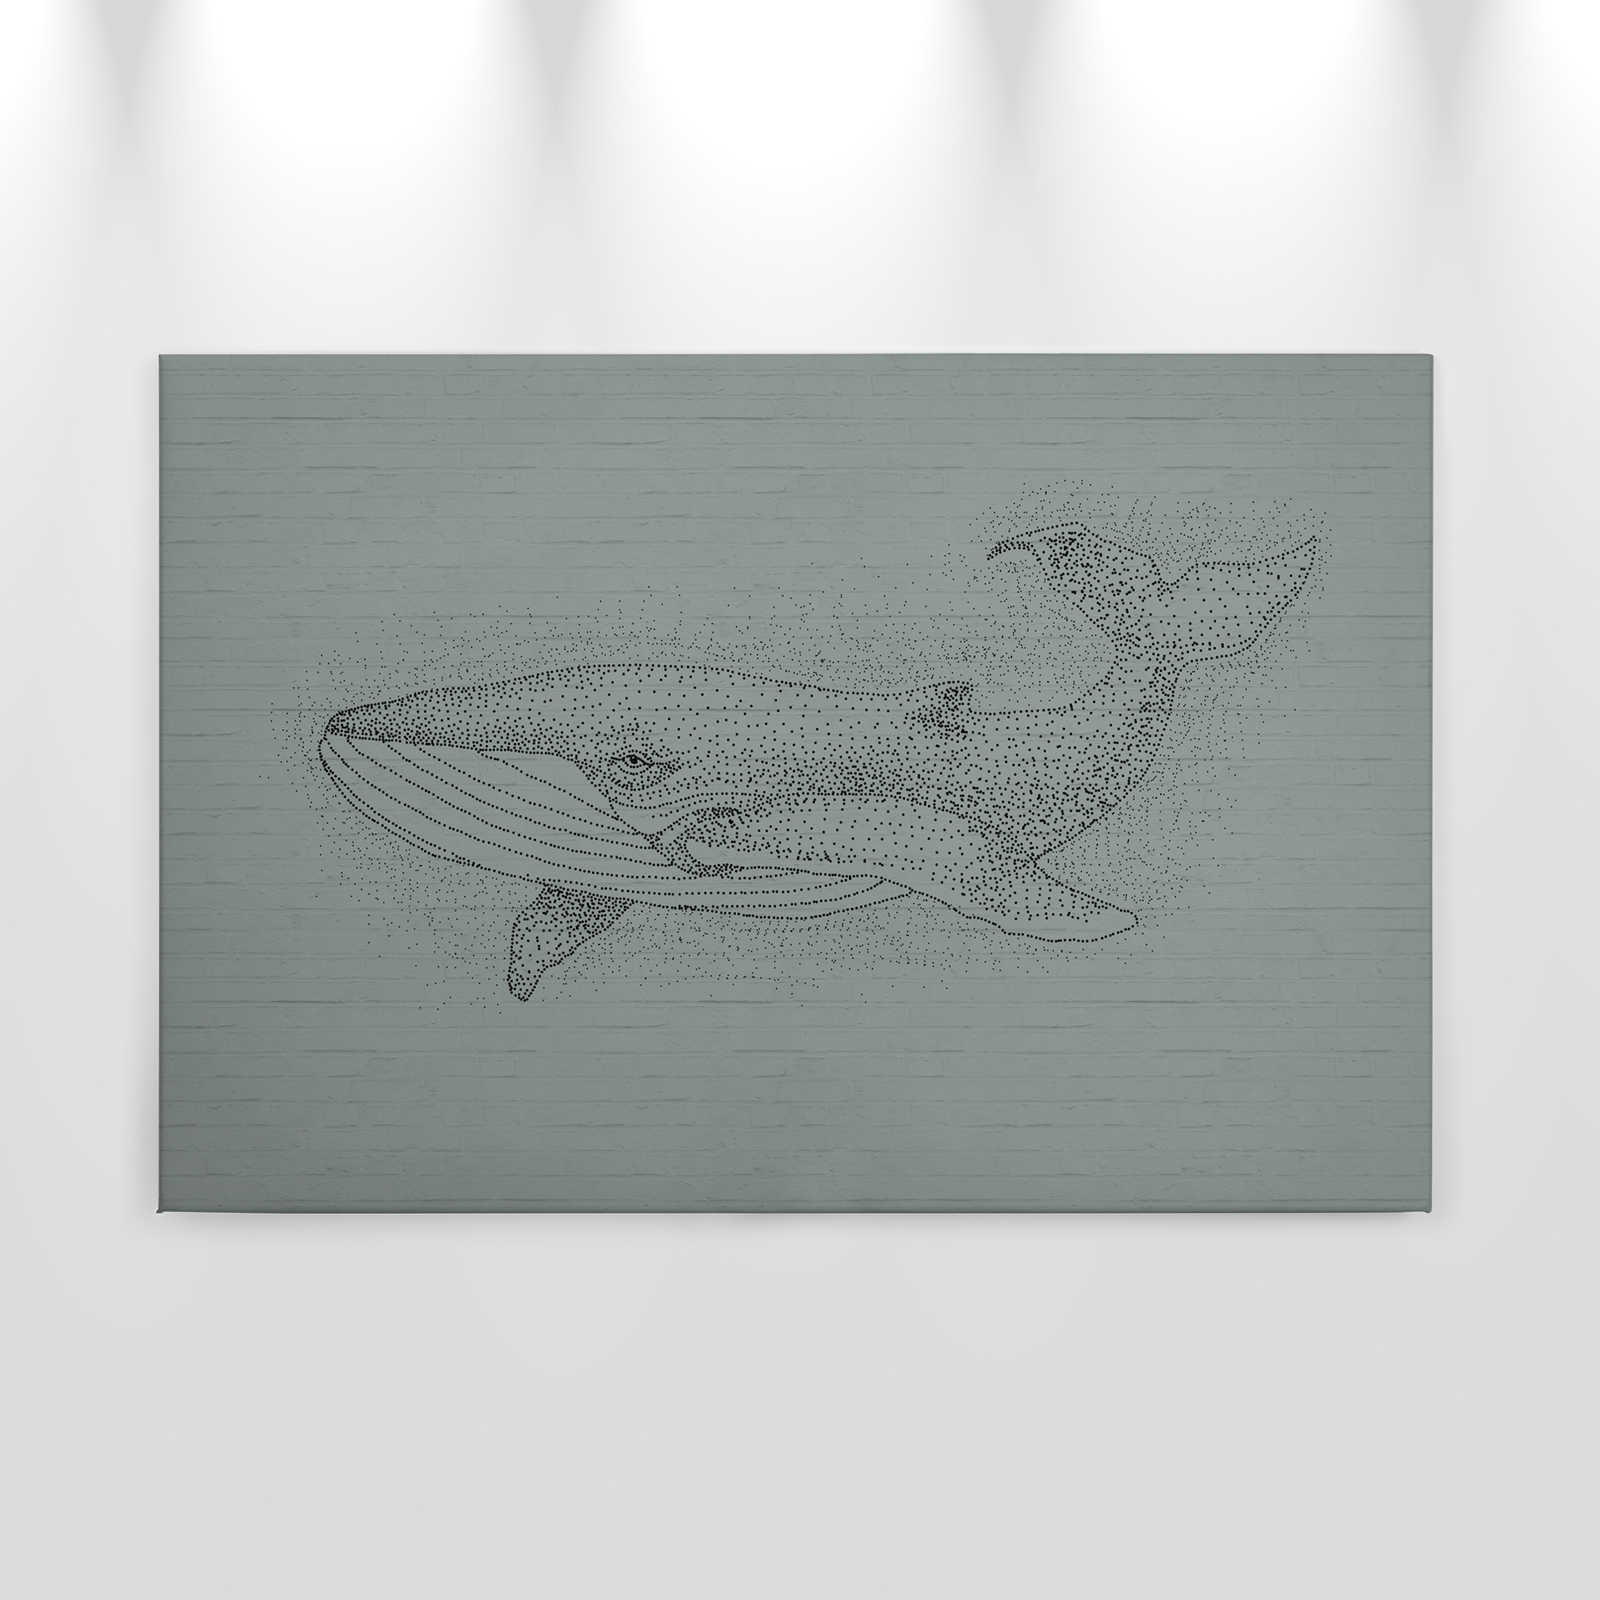             Cuadro mural de piedra con motivo de ballena en estilo dibujo - 0,90 m x 0,60 m
        